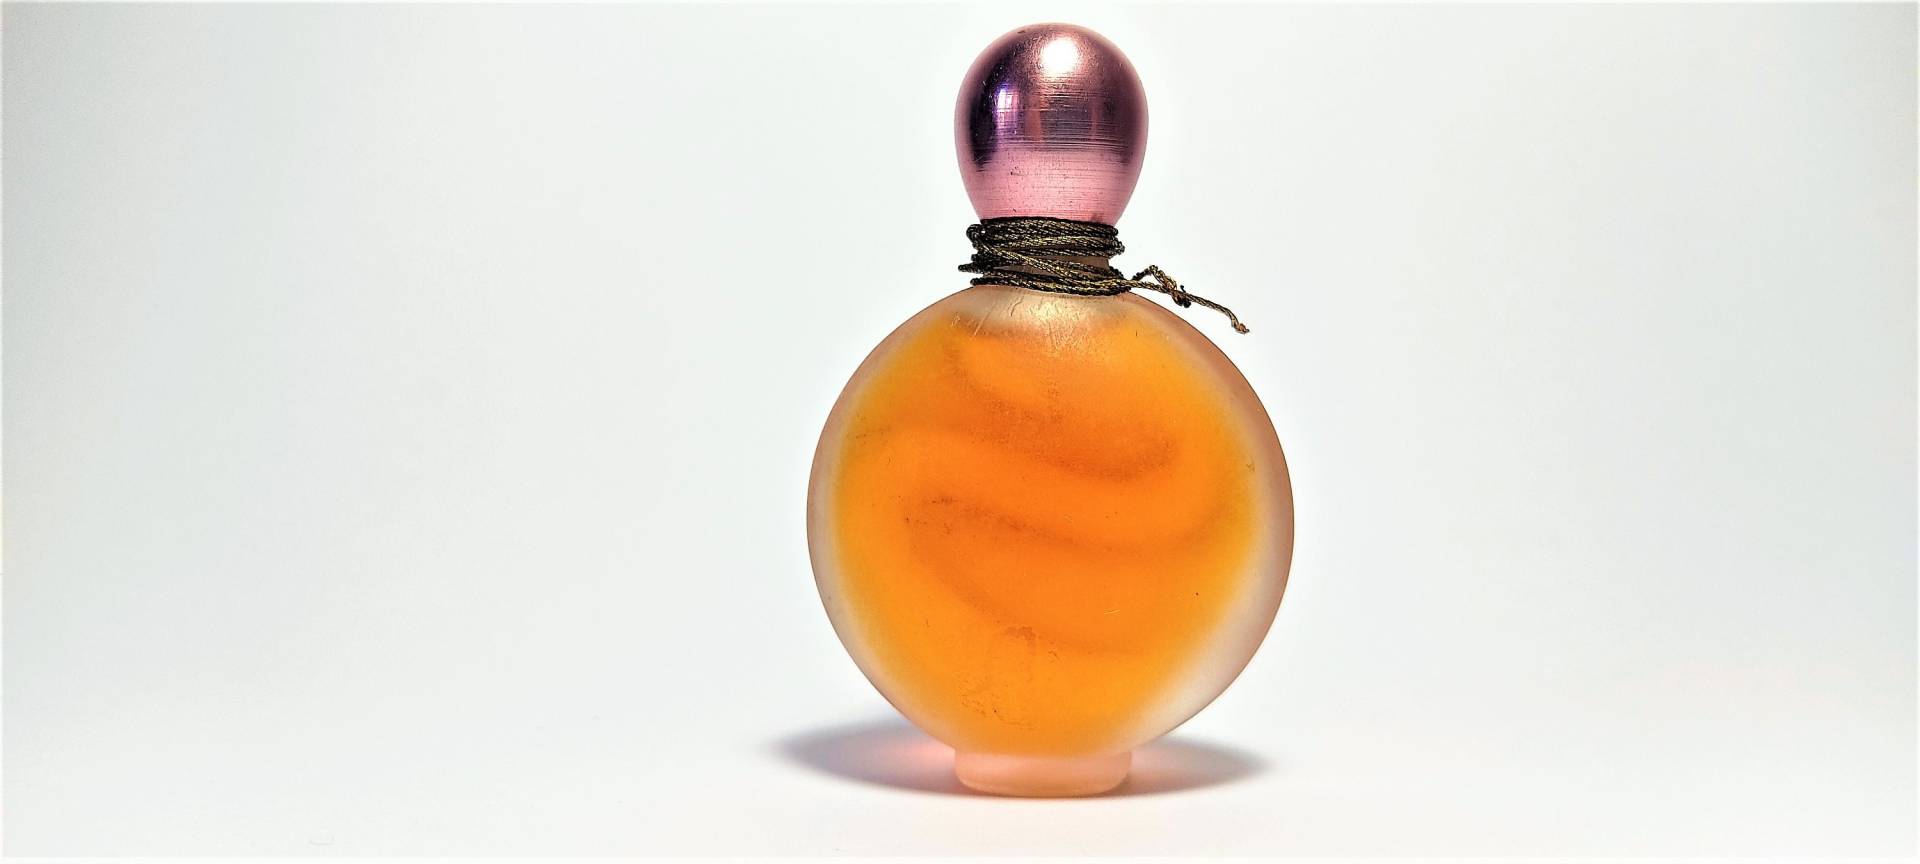 S Elsa Schiaparelli 1928 Parfum 15 Ml Vintage Extrait Duft Für Sammler Hard To Finde von Etsy - ItalianRetroBoutique